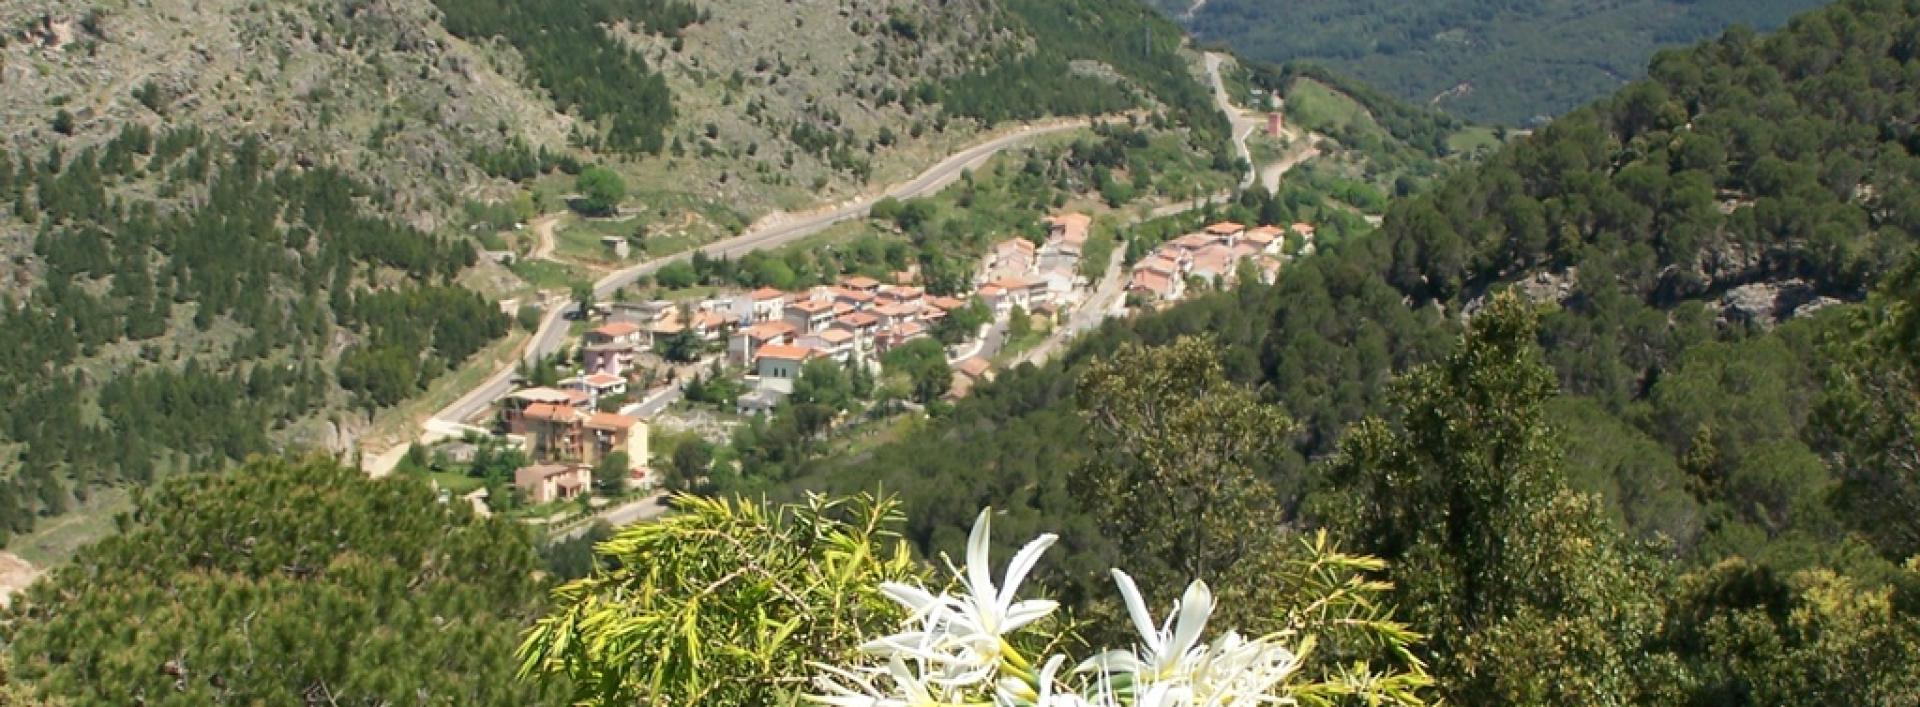 Gairo, panorama della frazione di Taquisara.jpg